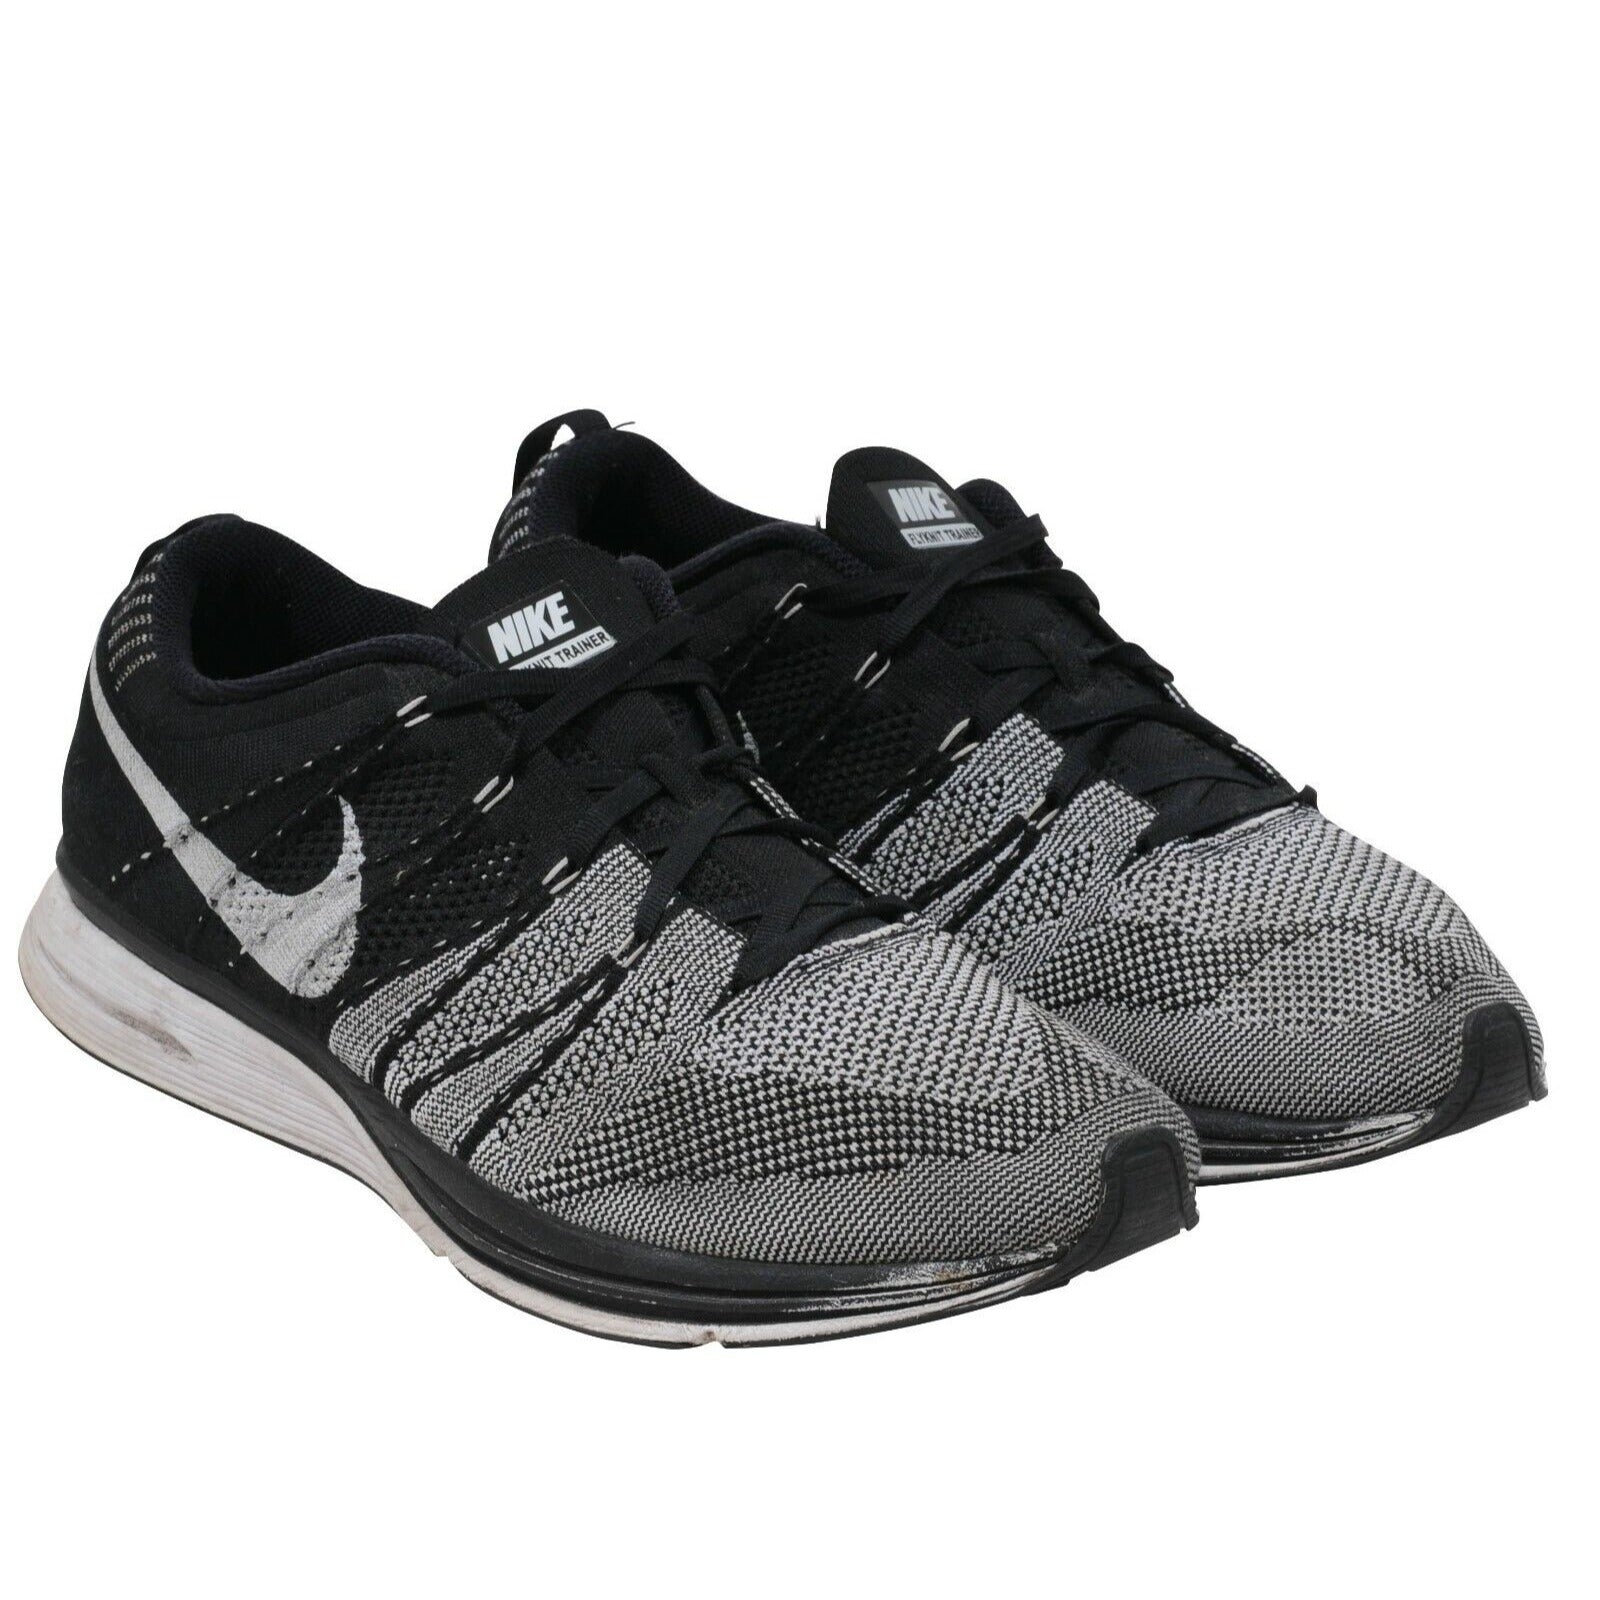 Oppervlakte kiespijn Voorkomen Nike Flyknit Trainer Black White 2012 Running Training Sneakers 11 –  THE-ECHELON